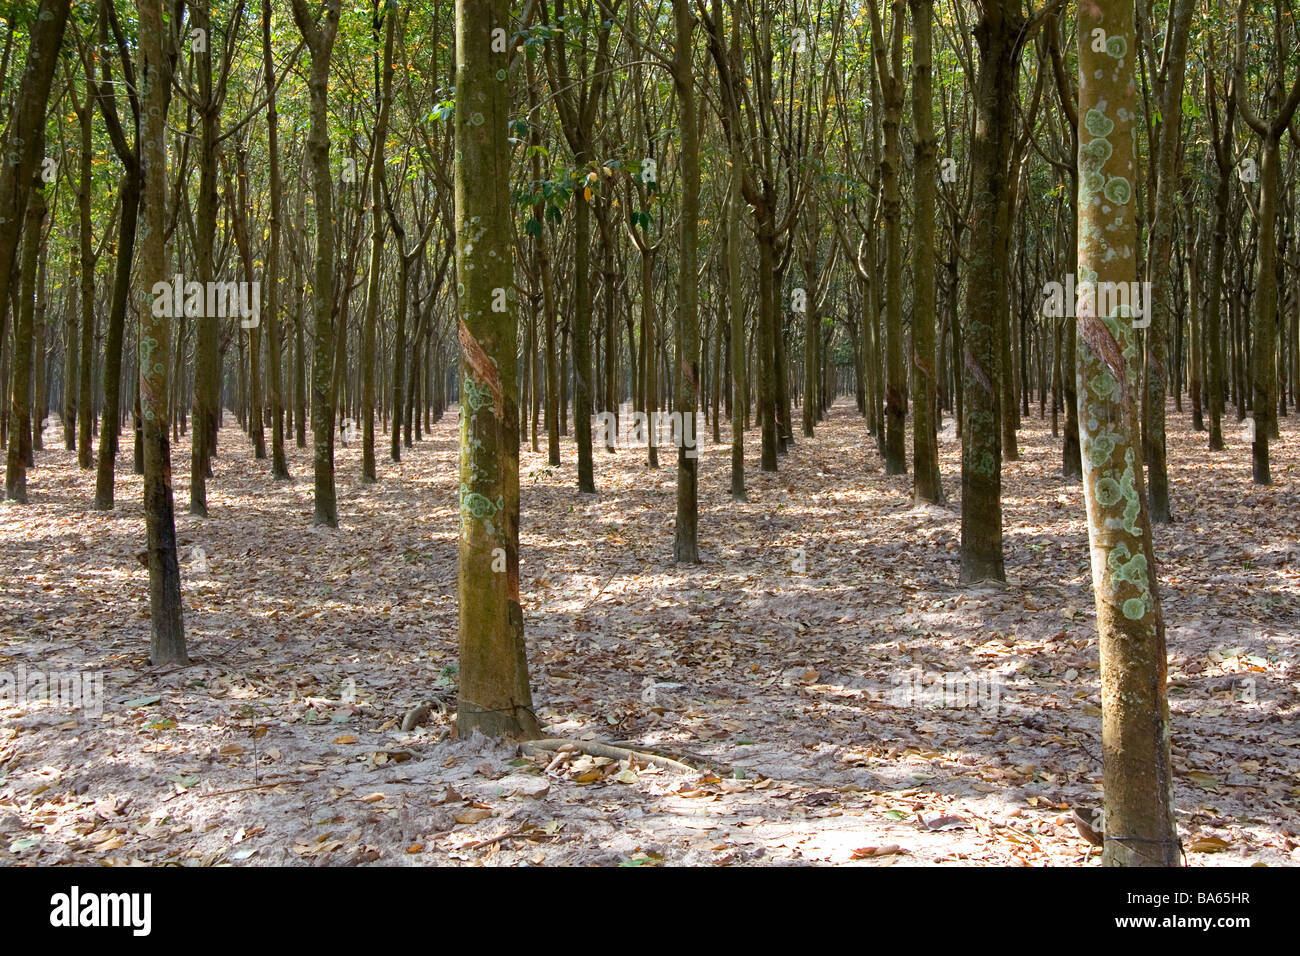 Rubber tree plantation near Tay Ninh Vietnam Stock Photo